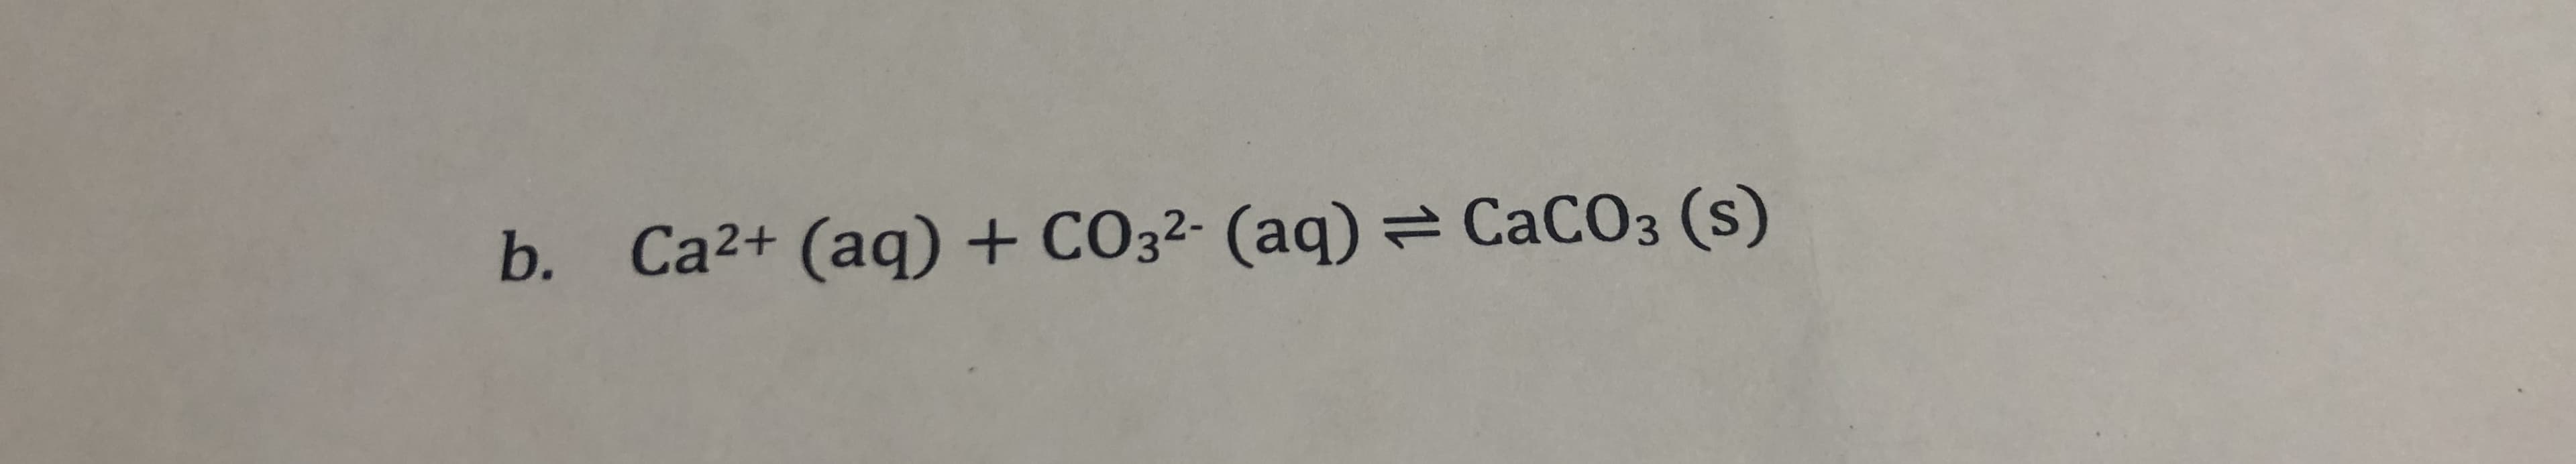 Ca2+ (aq) + CO32- (aq)CaCO3 (s)
b.
